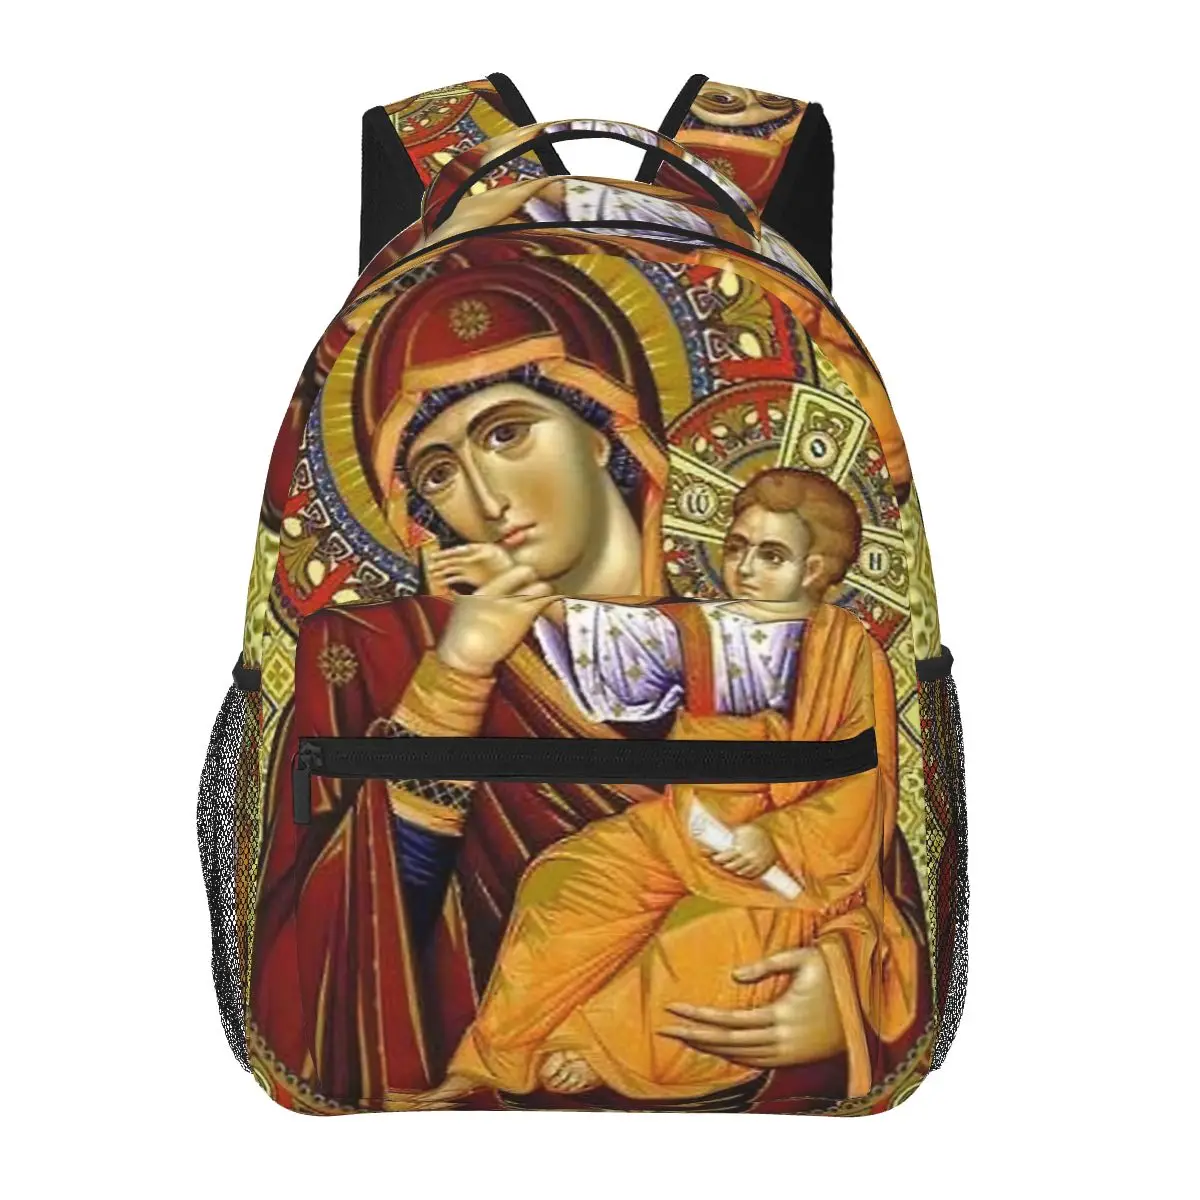 

Дева Мария, Иисус, рюкзак с Христом для девочек и мальчиков, дорожные рюкзаки для подростков, школьная сумка